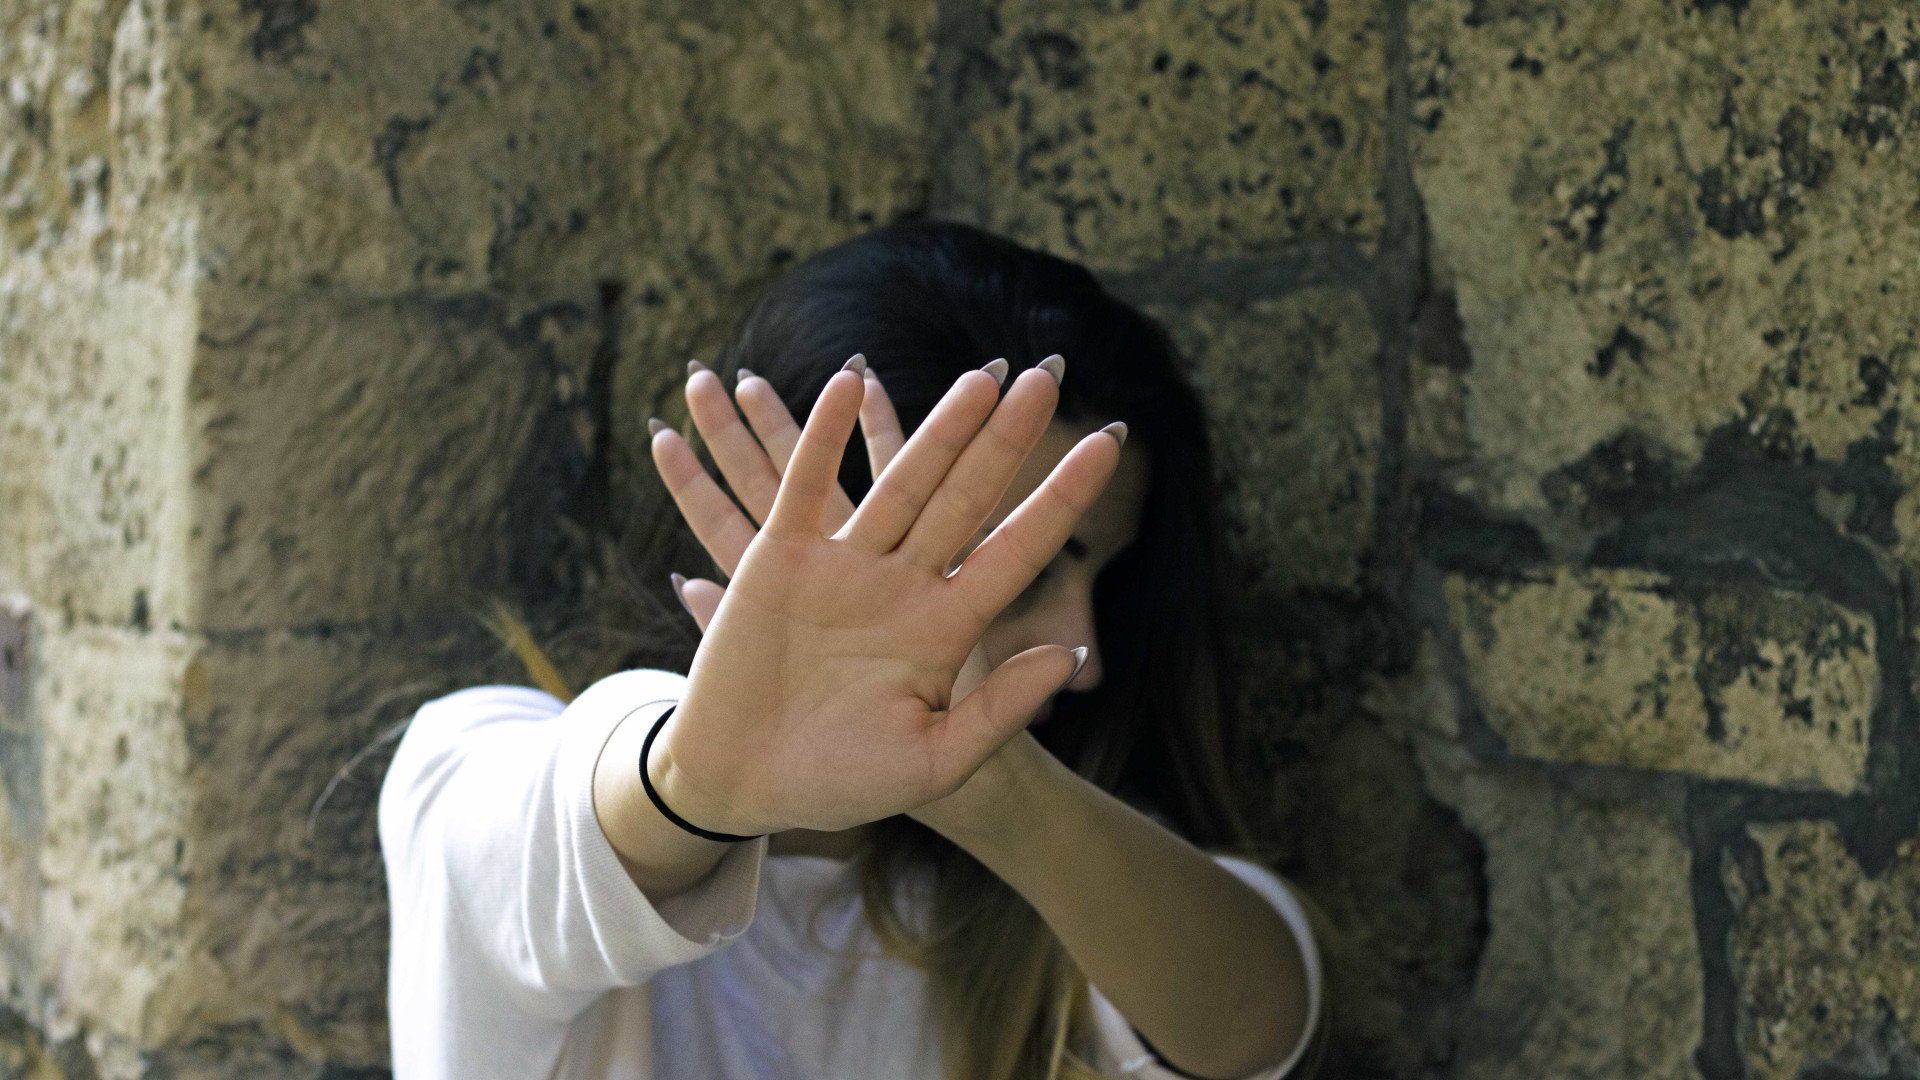 Maus-tratos repetidos contra mulheres aumentam risco de suicídio